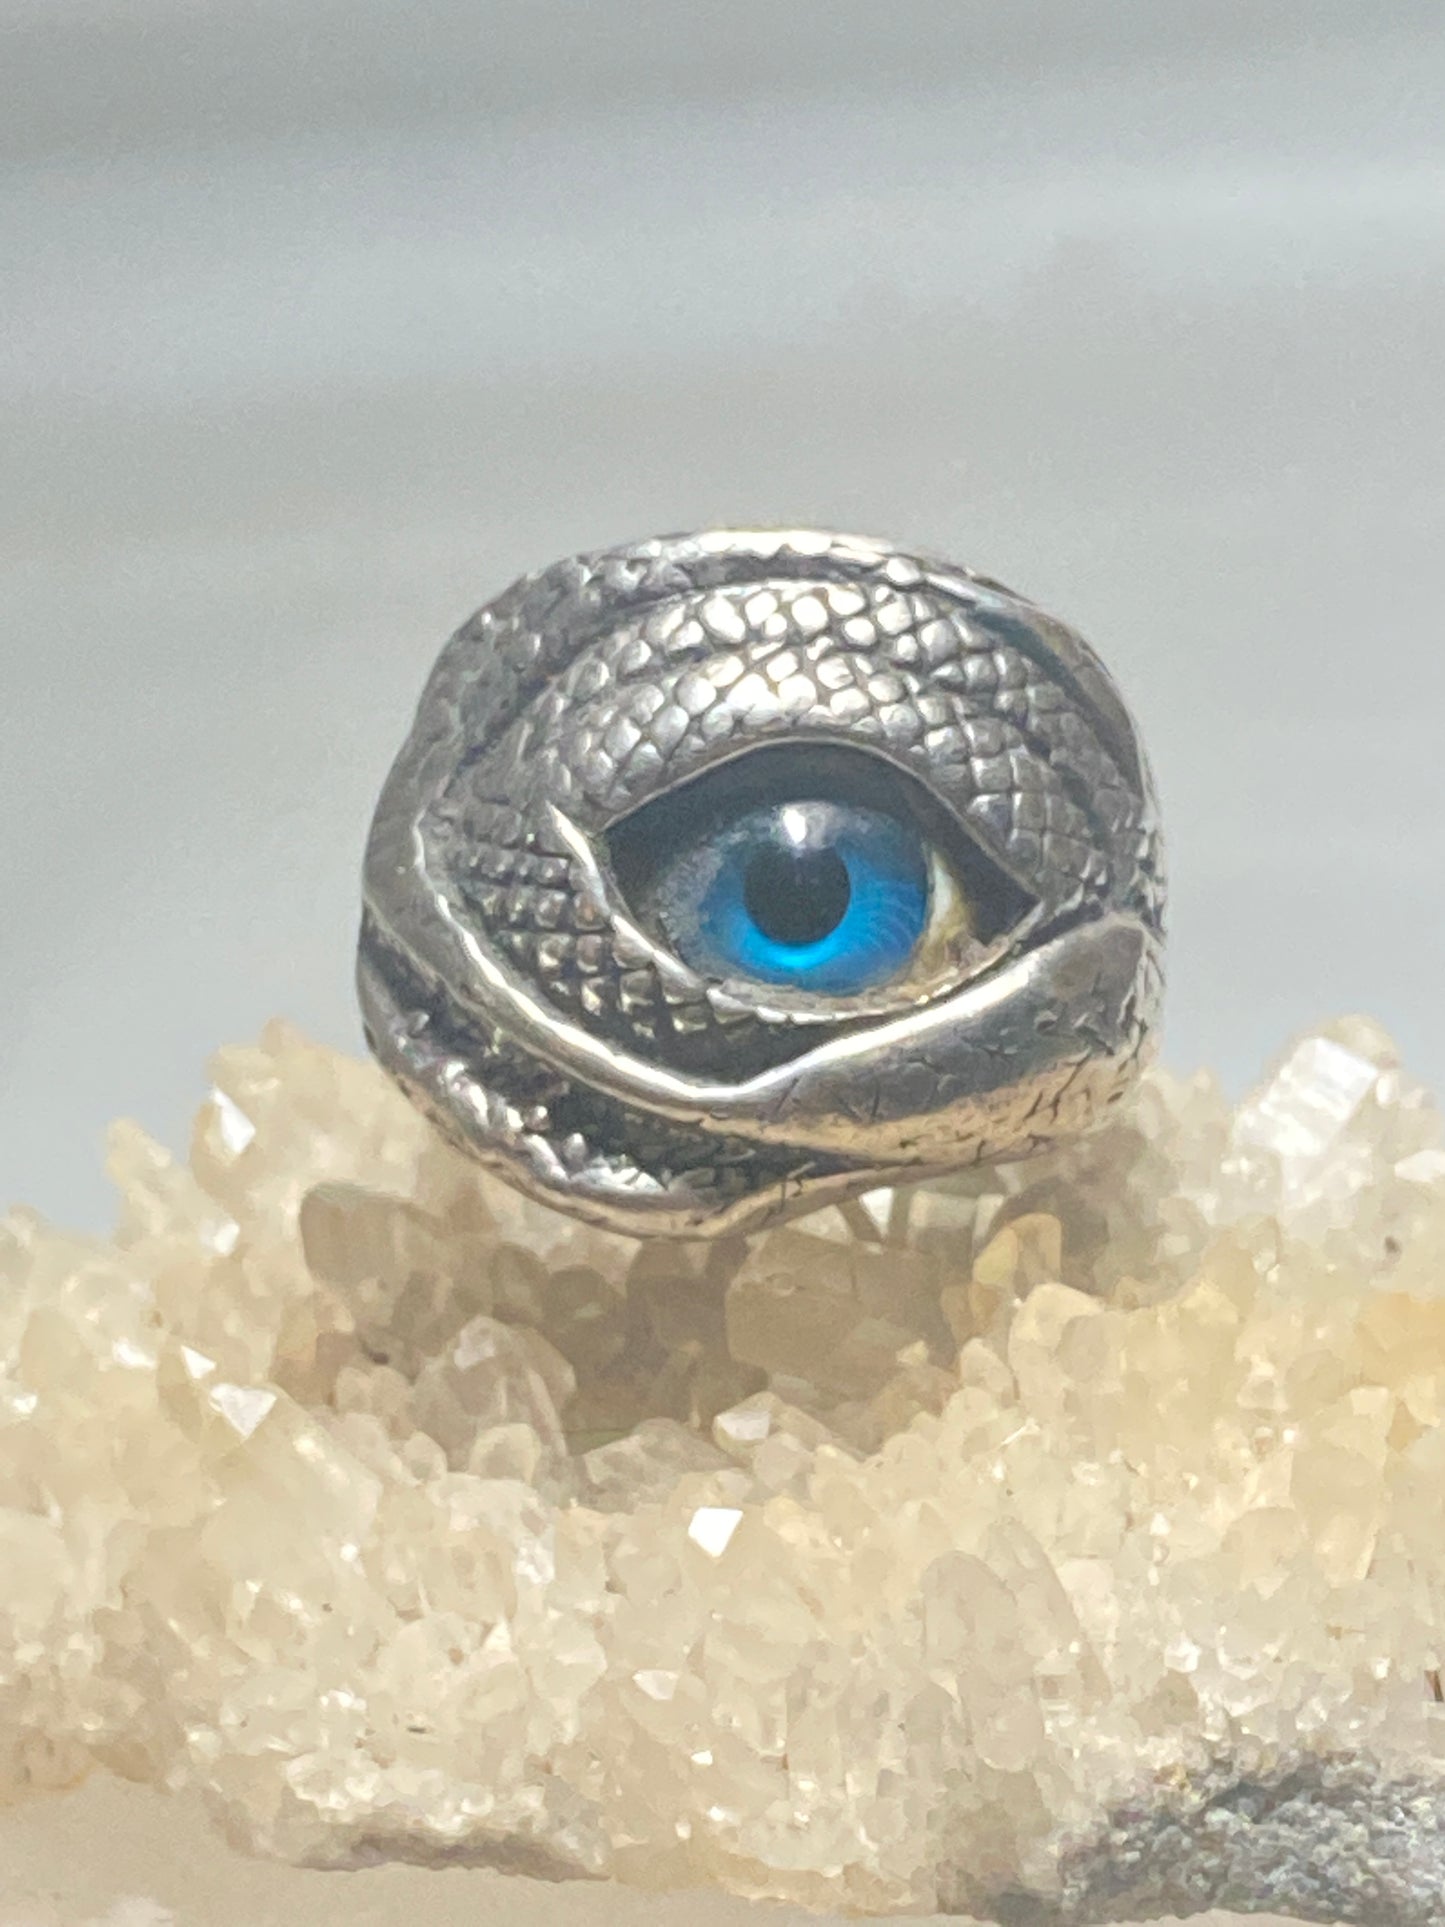 Eyeball ring size 10.50 biker pentagram snake skin wide eye band sterling silver women men